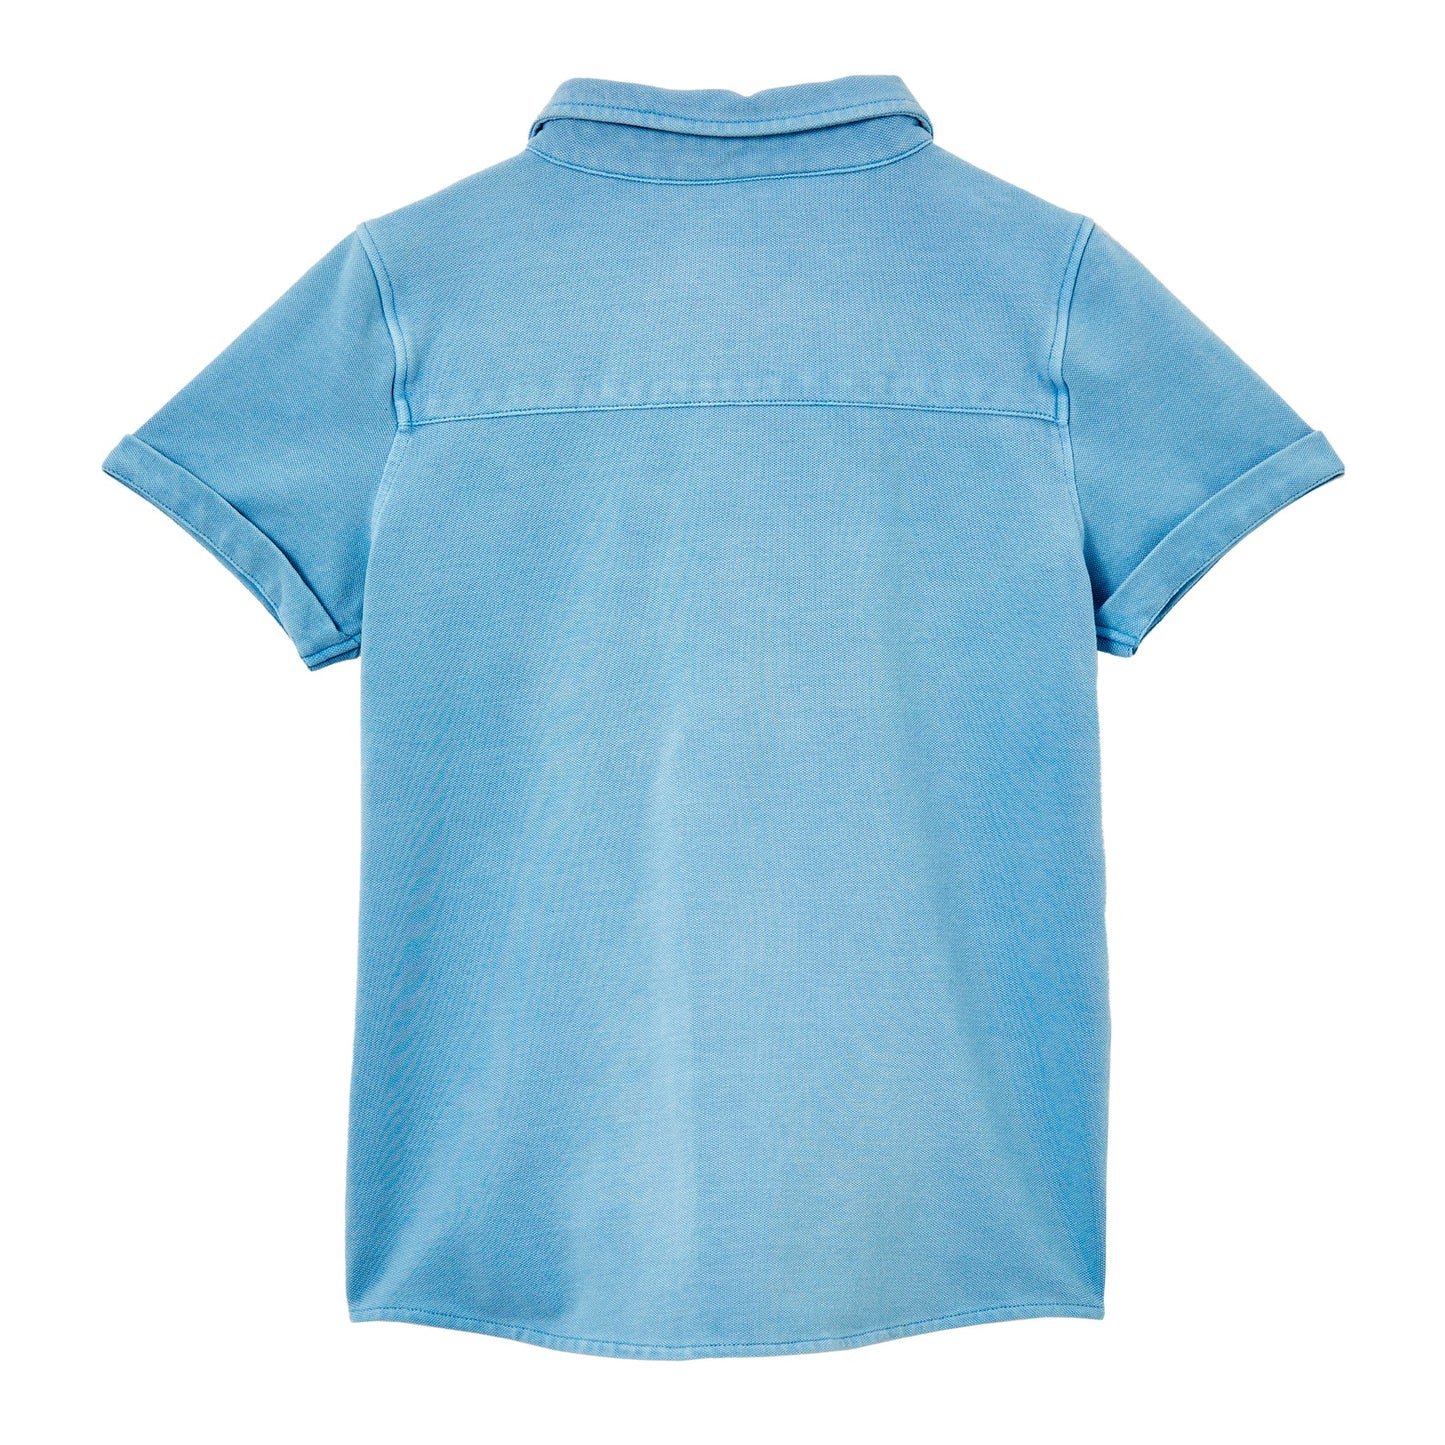 Blue Pique Shirt